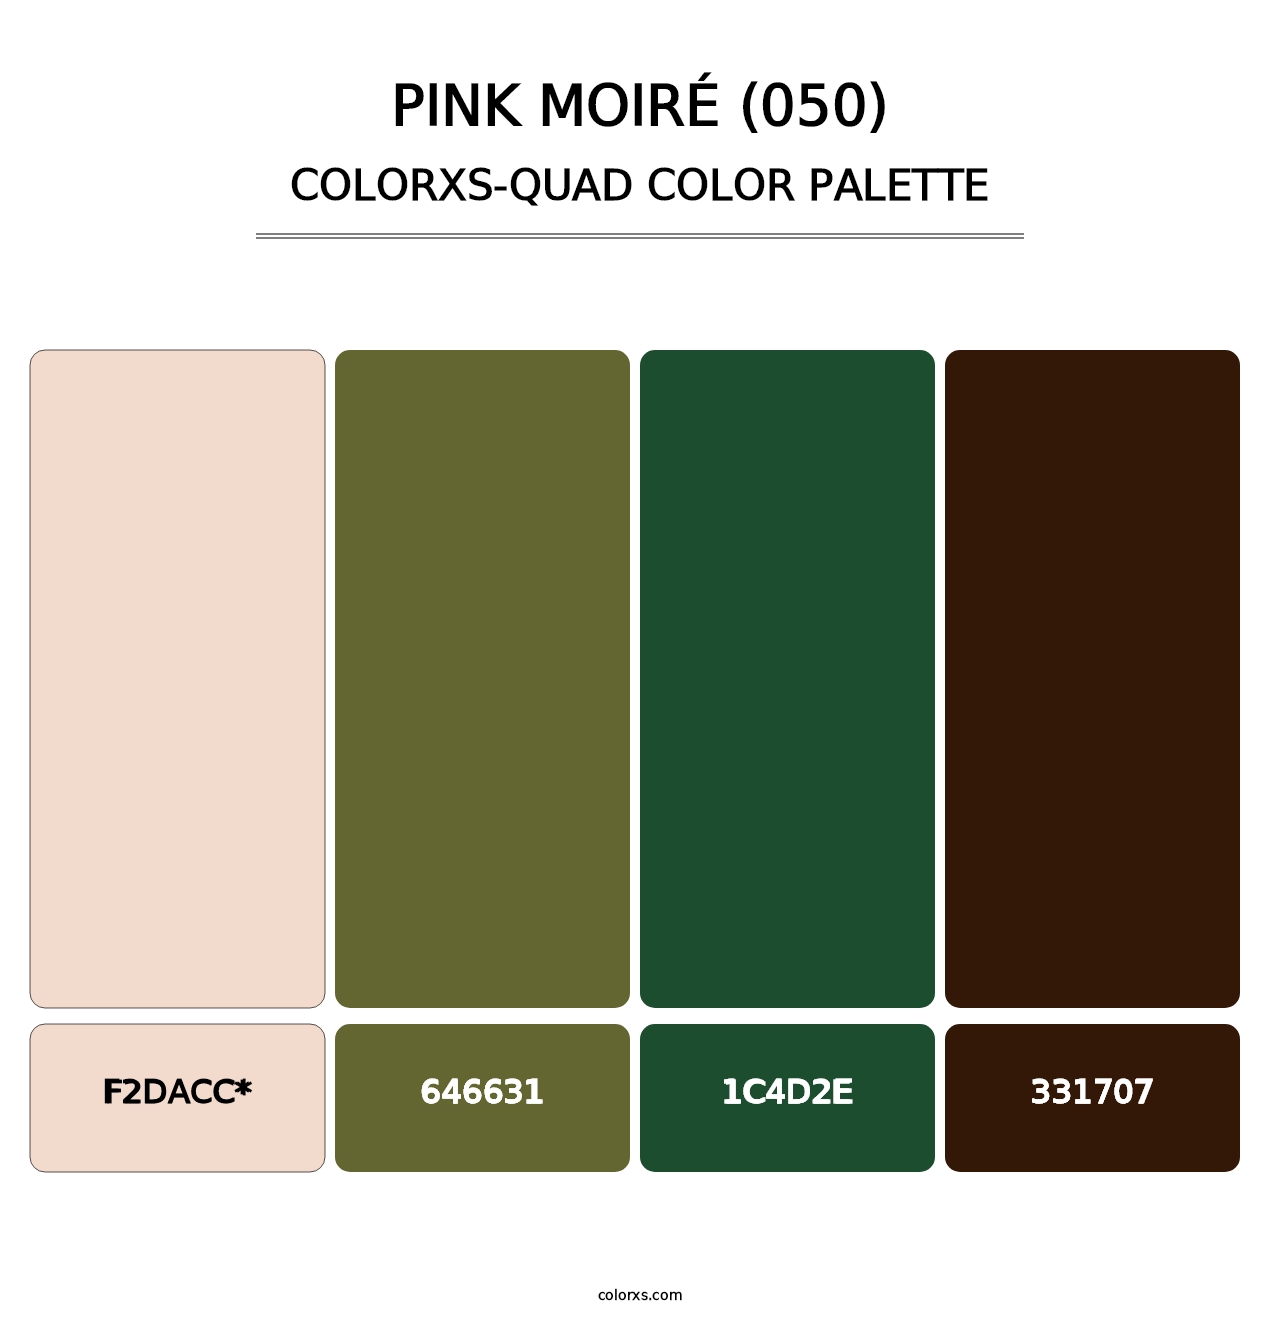 Pink Moiré (050) - Colorxs Quad Palette